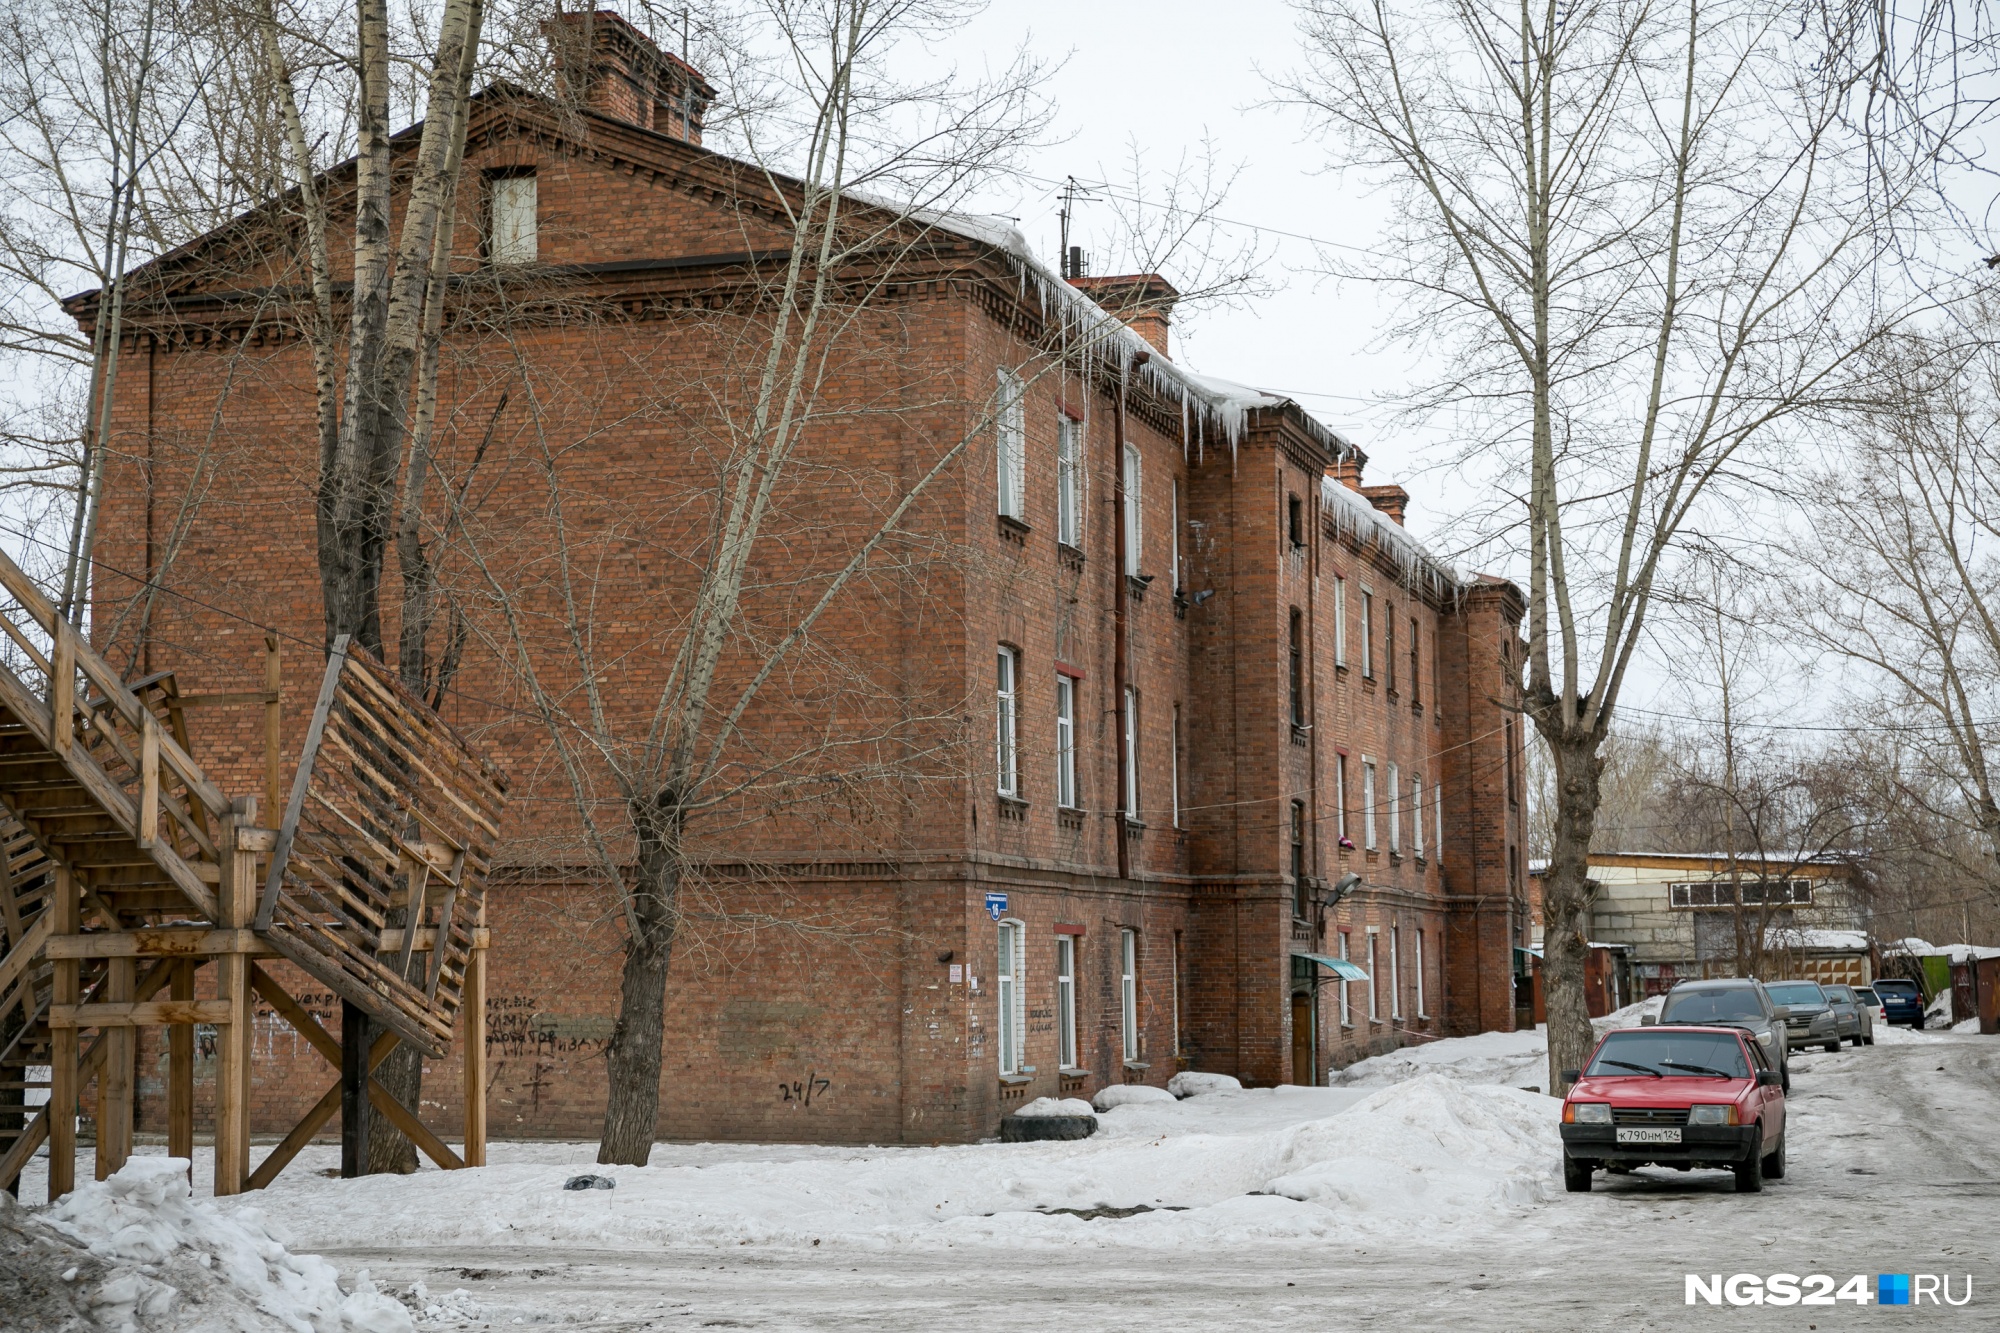 Трехэтажные казармы были жильем офицеров в дореволюционном Красноярске 